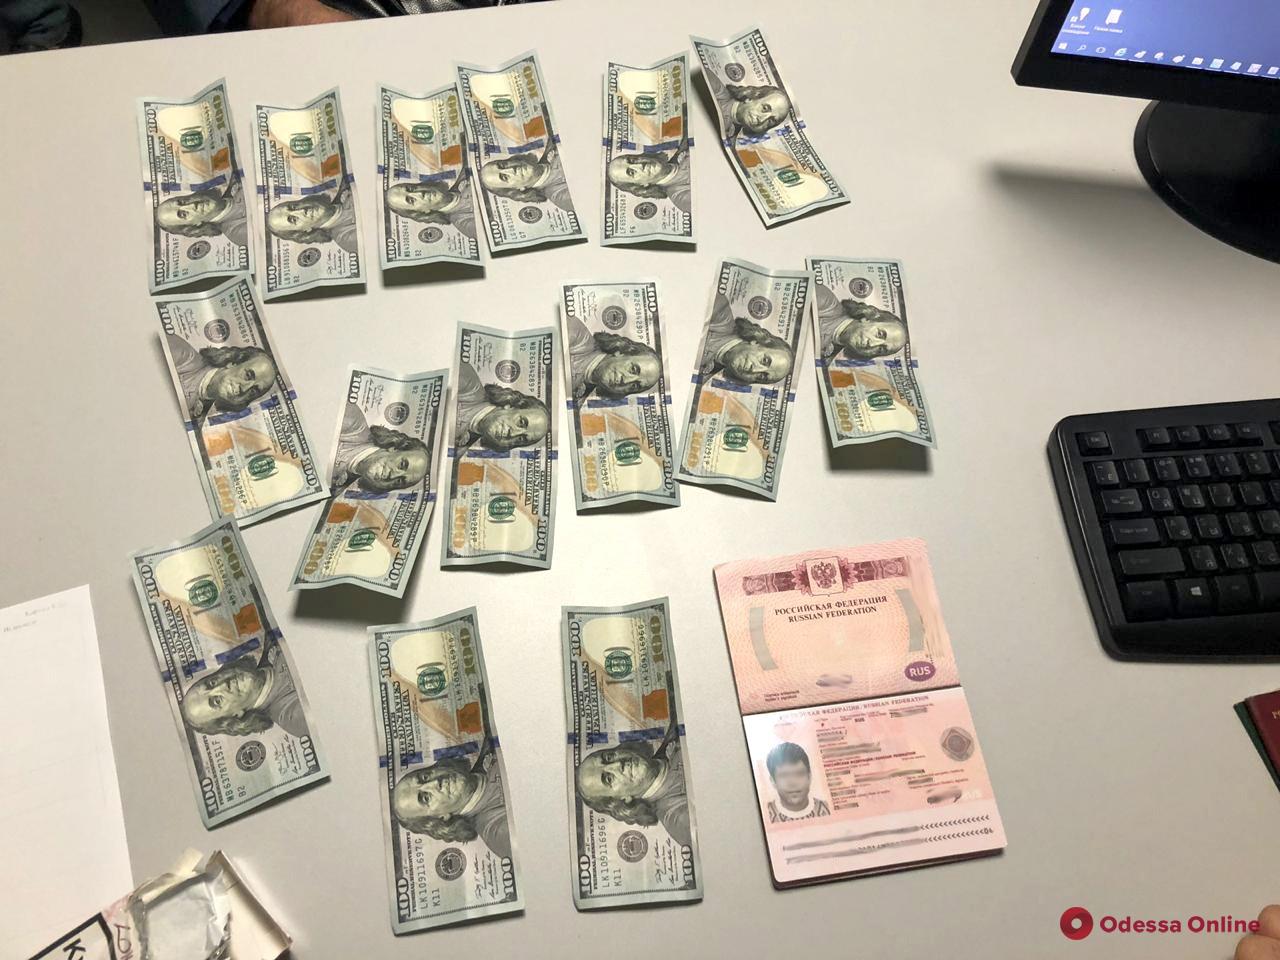 Россиянин пытался «выкупить» друга у одесских пограничников за полторы тысячи долларов